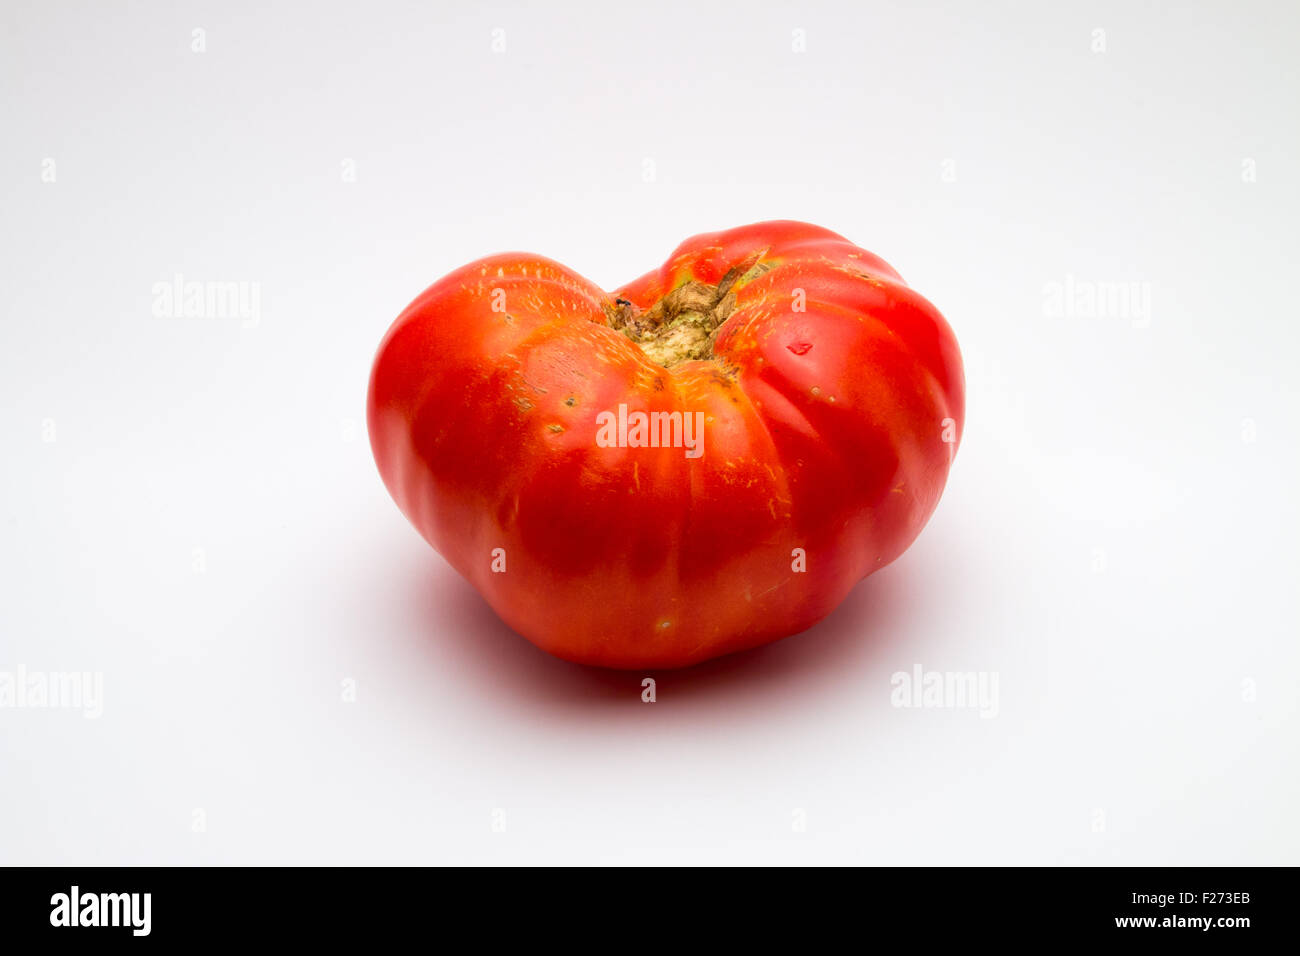 Large, imperfect brandywine tomato (Solanum lycopersicum) on white background Stock Photo